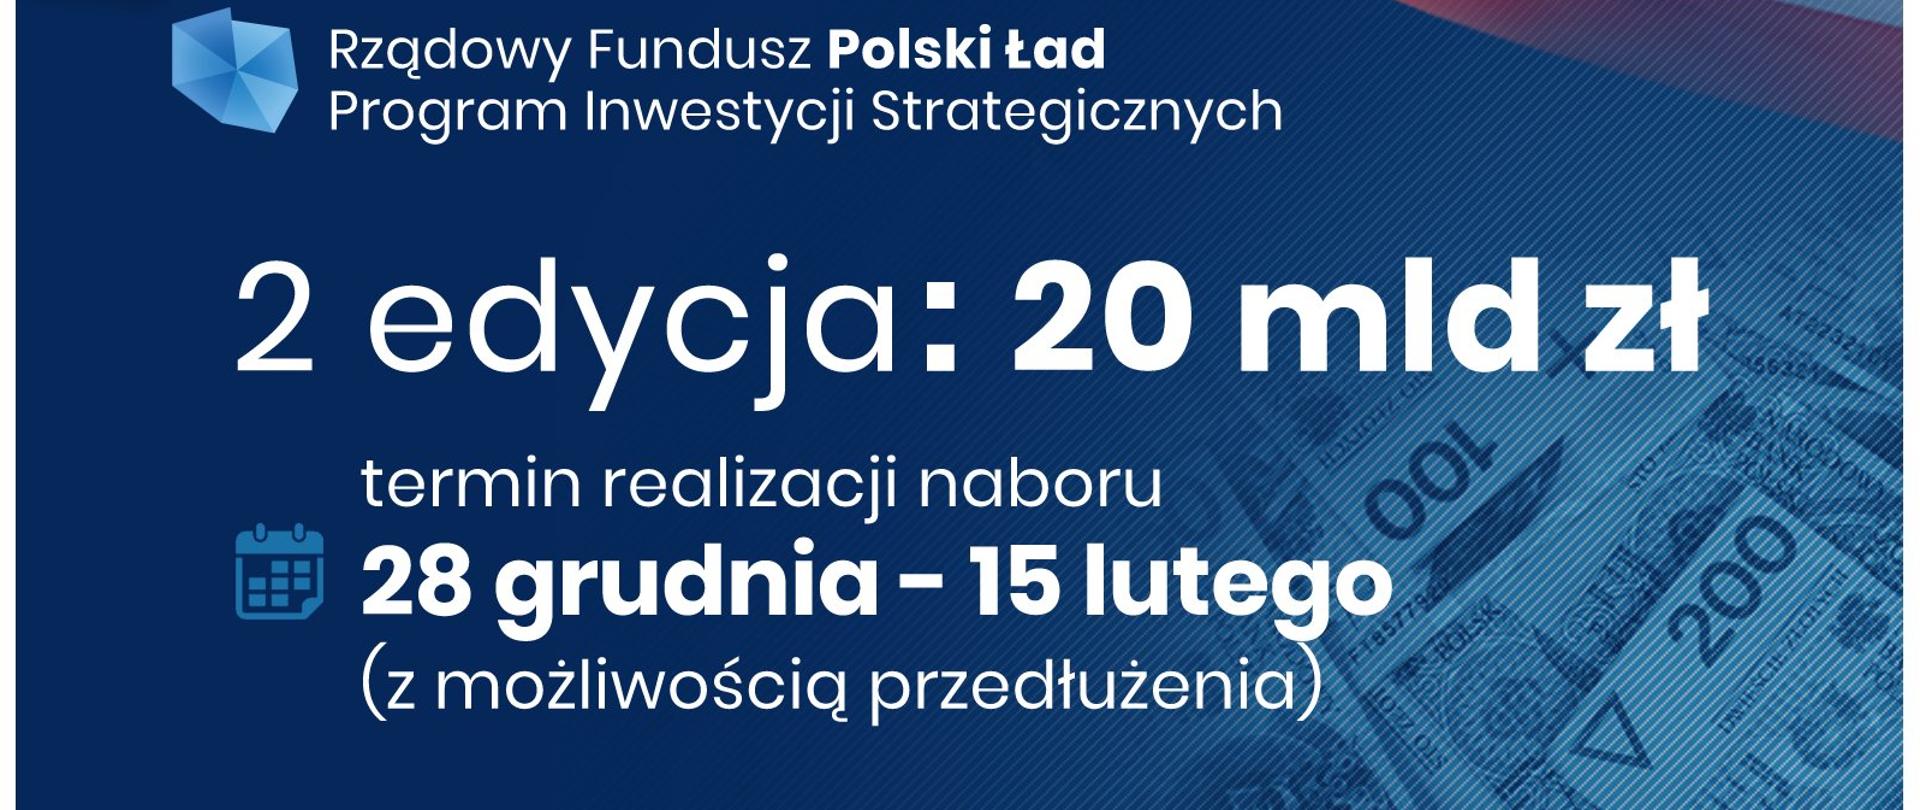 Plansza informacyjna Rządowy Fundusz Polski Ład Program Inwestycji Strategicznych, II edycja 20 mln zł, termin naboru 28 grudnia - 15 lutego z możliwością przedłużenia 